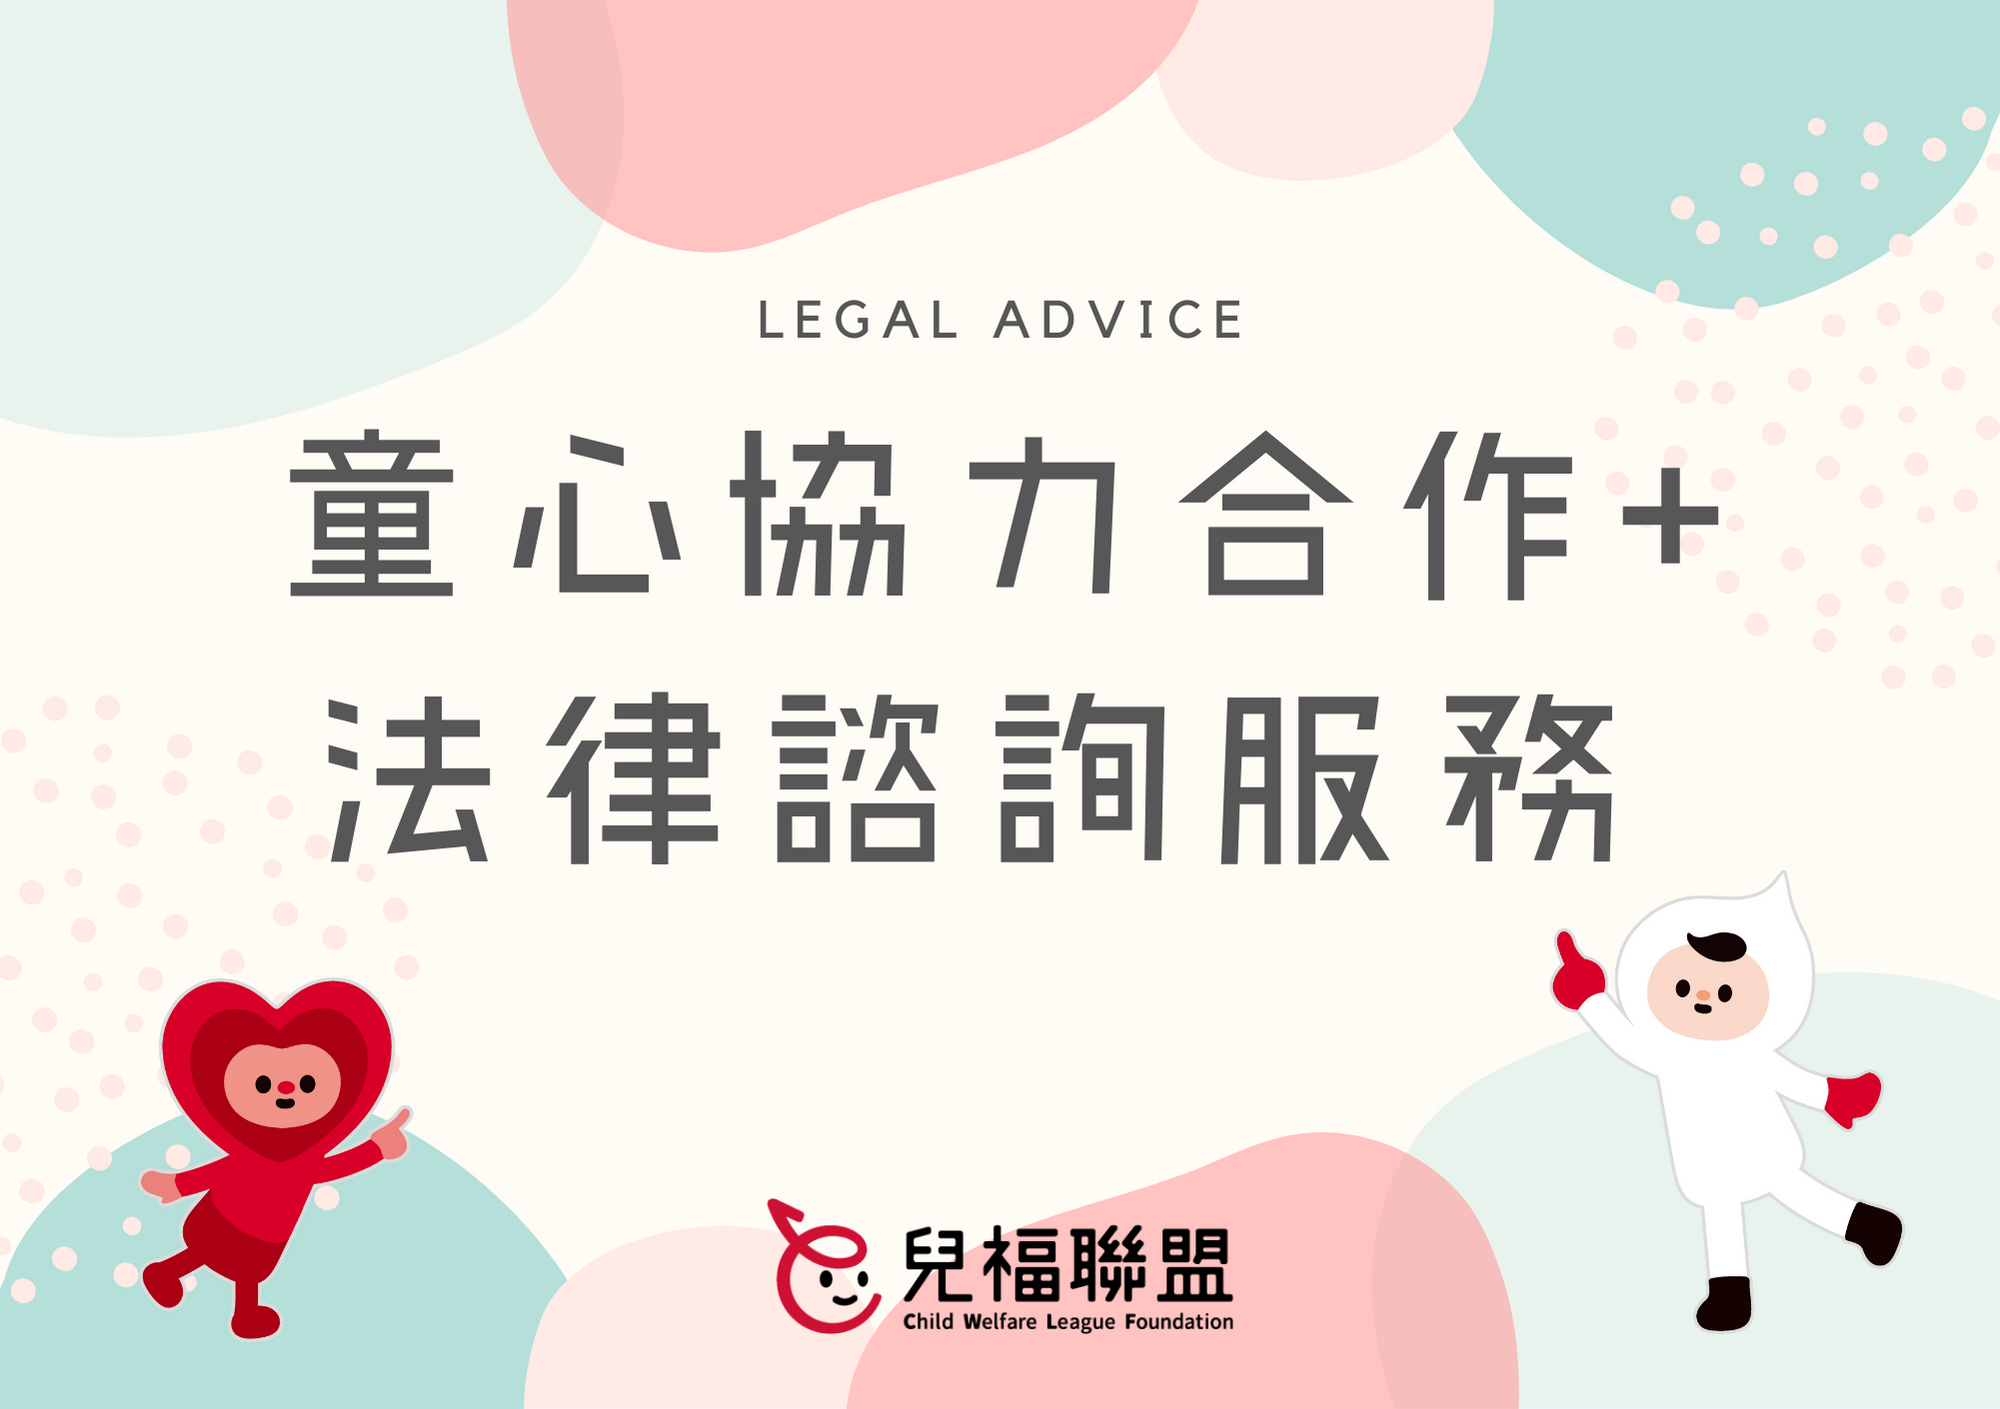 【服務訊息】童心協力合作+ 法律諮詢服務(北部)